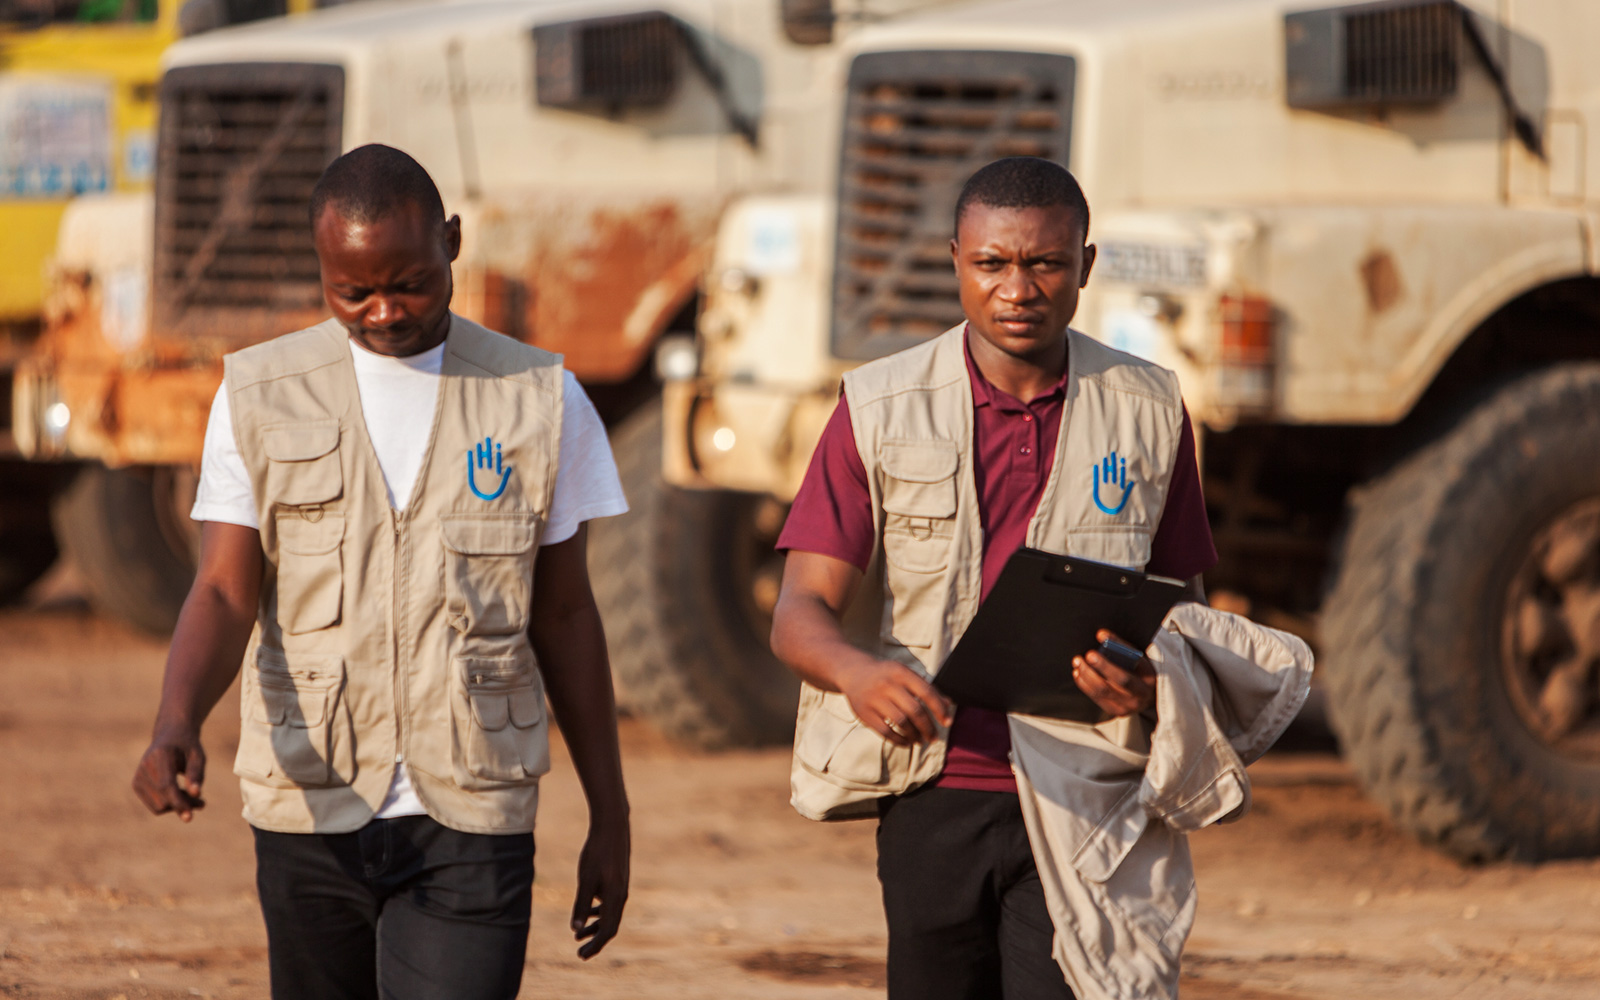 DRC, Edouard and Sylvain of the HI logistics platform project set up in response to the Kasai humanitarian crisis.